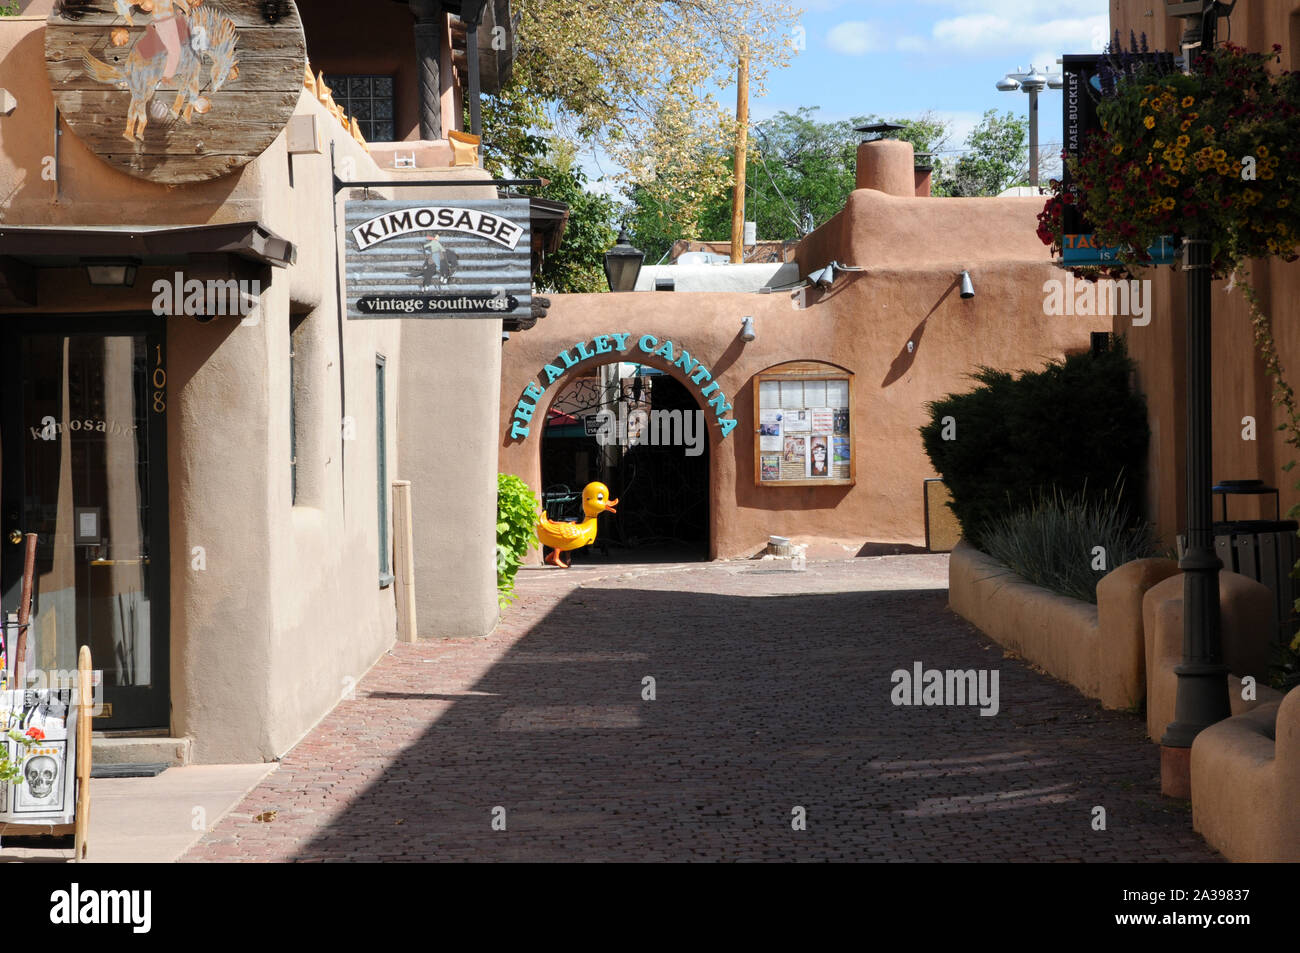 Edifici e negozi in stile adobe appena fuori del plaza a Taos New Mexico. Foto Stock